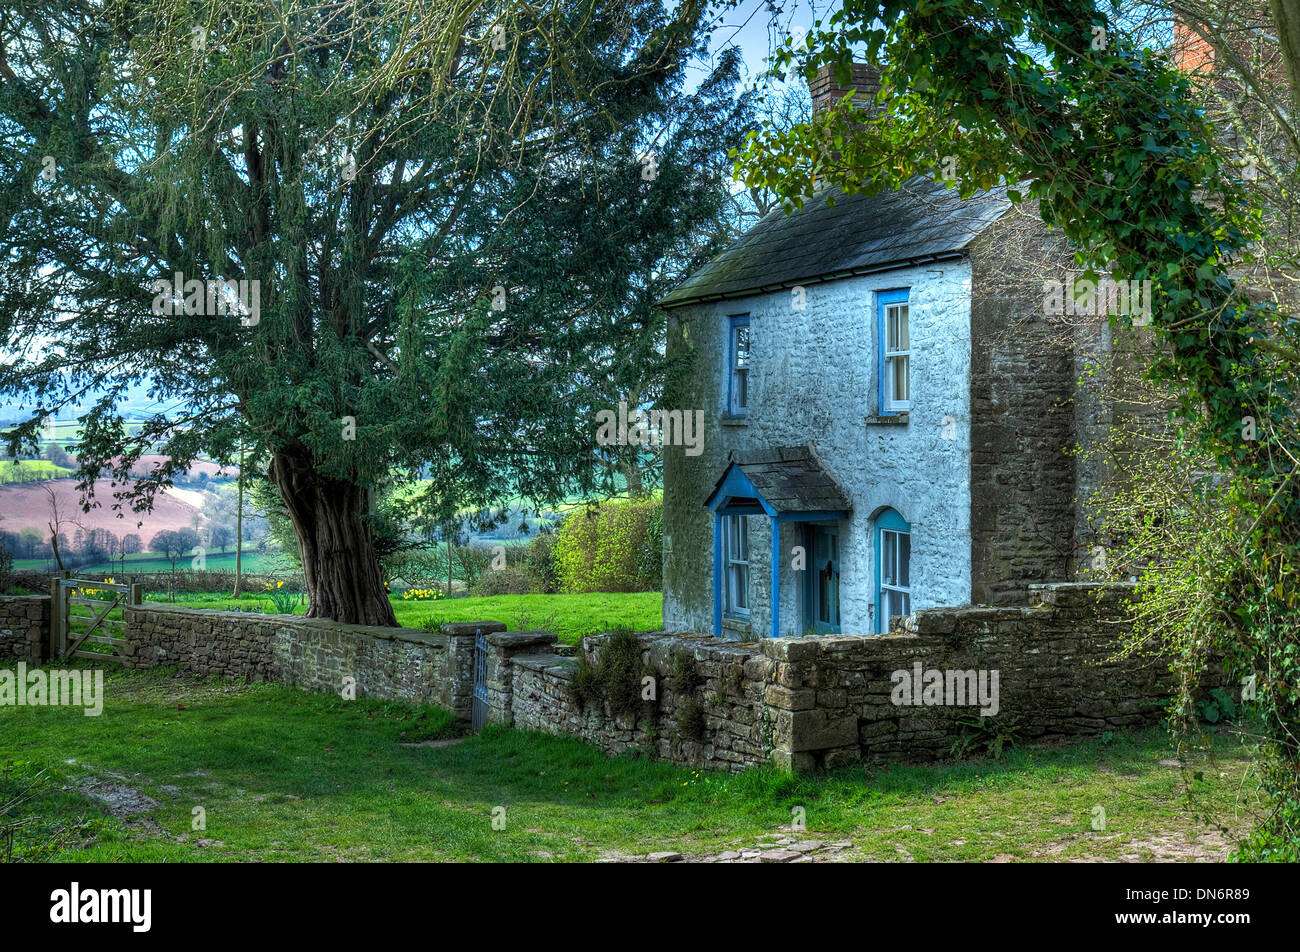 Joli Cottage gallois près de château blanc, Monmouthshire, Wales, UK. Banque D'Images